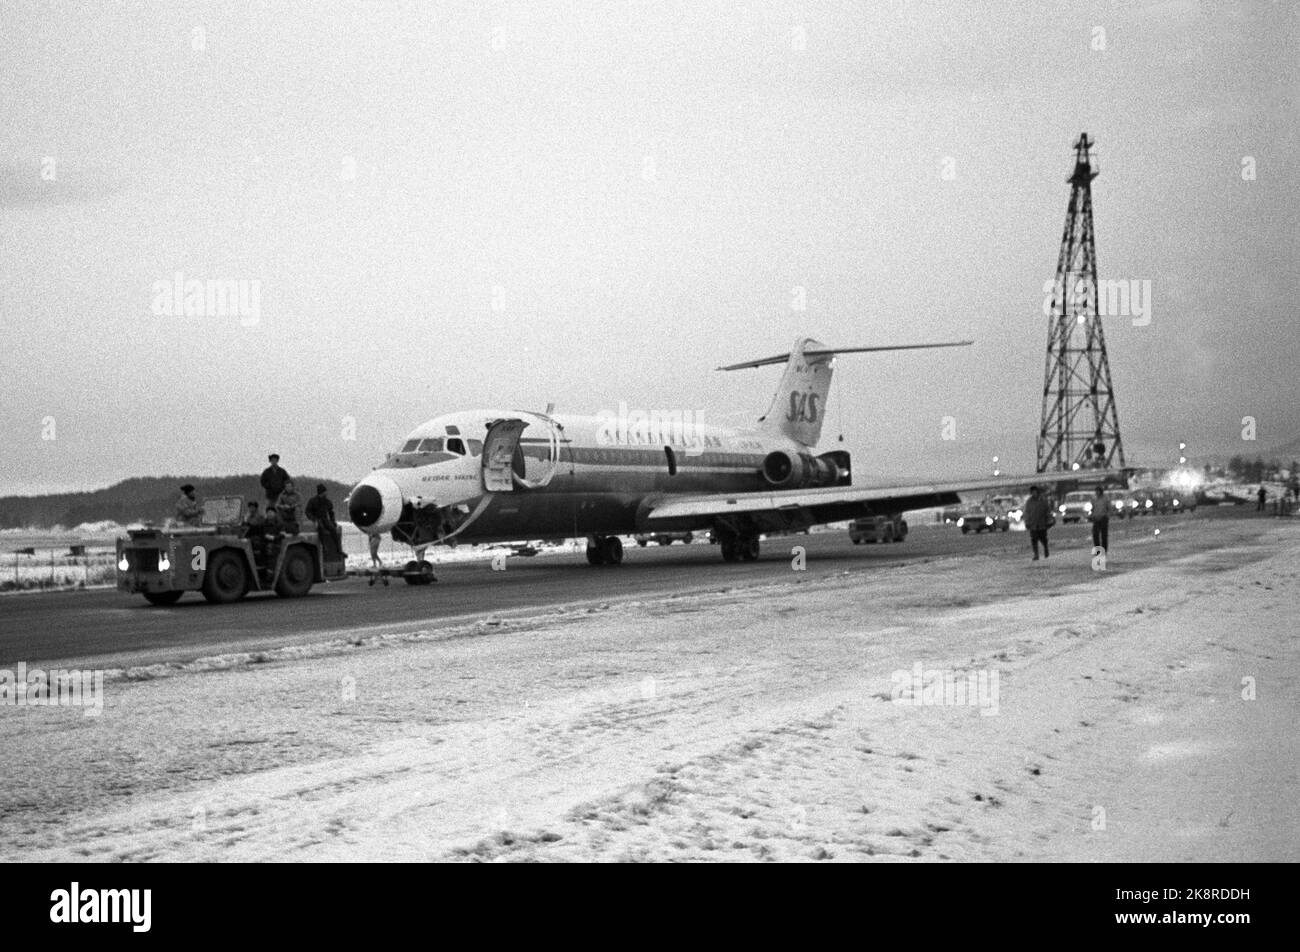 Oslo 19730204. L'autorità portuale di Oslo S Oslokran (da a h.) Può sollevare fino a 100 tonnellate e quindi non ha avuto alcuna difficoltà a sollevare l'aereo SAS 'Reidar Viking' dal fondo marino e mettere l'aereo a terra. L'aeromobile pesava 40 tonnellate quando scivolava via dalla pista nel gennaio 1973, ma 11 tonnellate di carburante venivano pompate fuori. La foto è stata scattata dopo il sollevamento dell'aereo, il 4 febbraio 1973. 4903 A FOTO: NTB / NTB Foto Stock